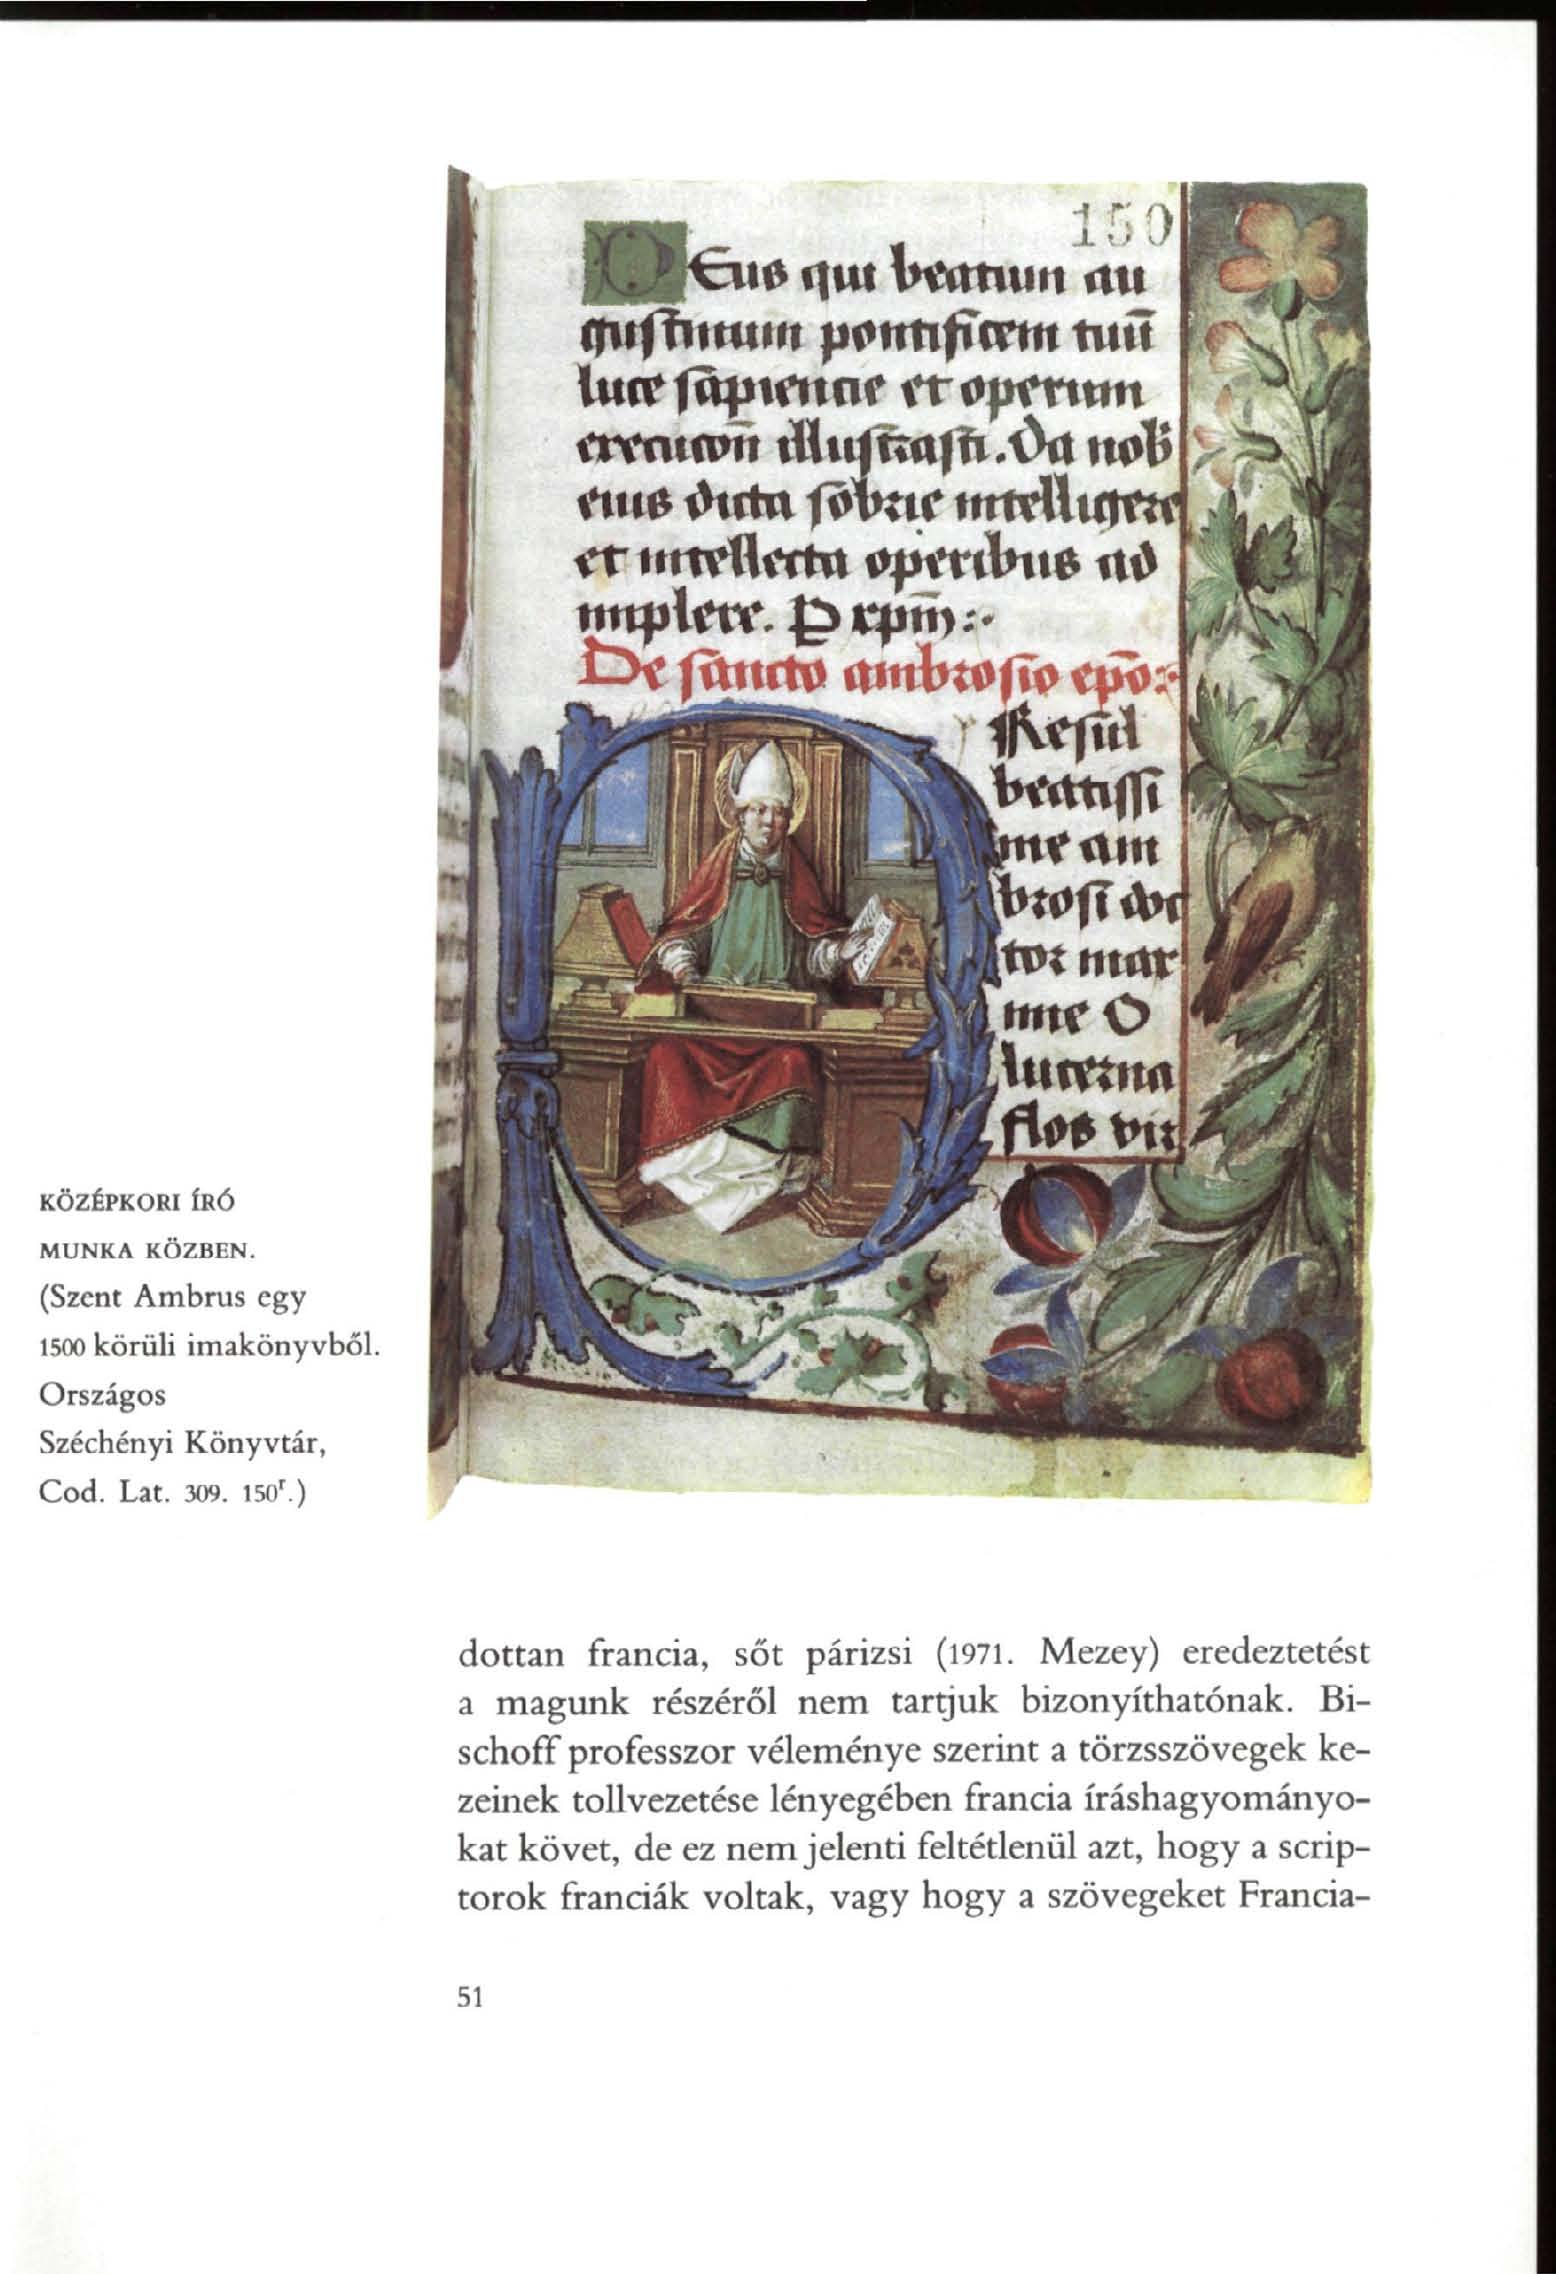 1591 110 f ut Wmiitt itu ((itfhímtn pctmfiftm tuíí tftvntnm thtunaffi.'oa n^^ untam [tot tttmr tmro [Xnmna W KÖZÉPKORI ÍRÓ MUNKA KÖZBEN. (Szent Ambrus egy 1500 körüli imakönyvből.